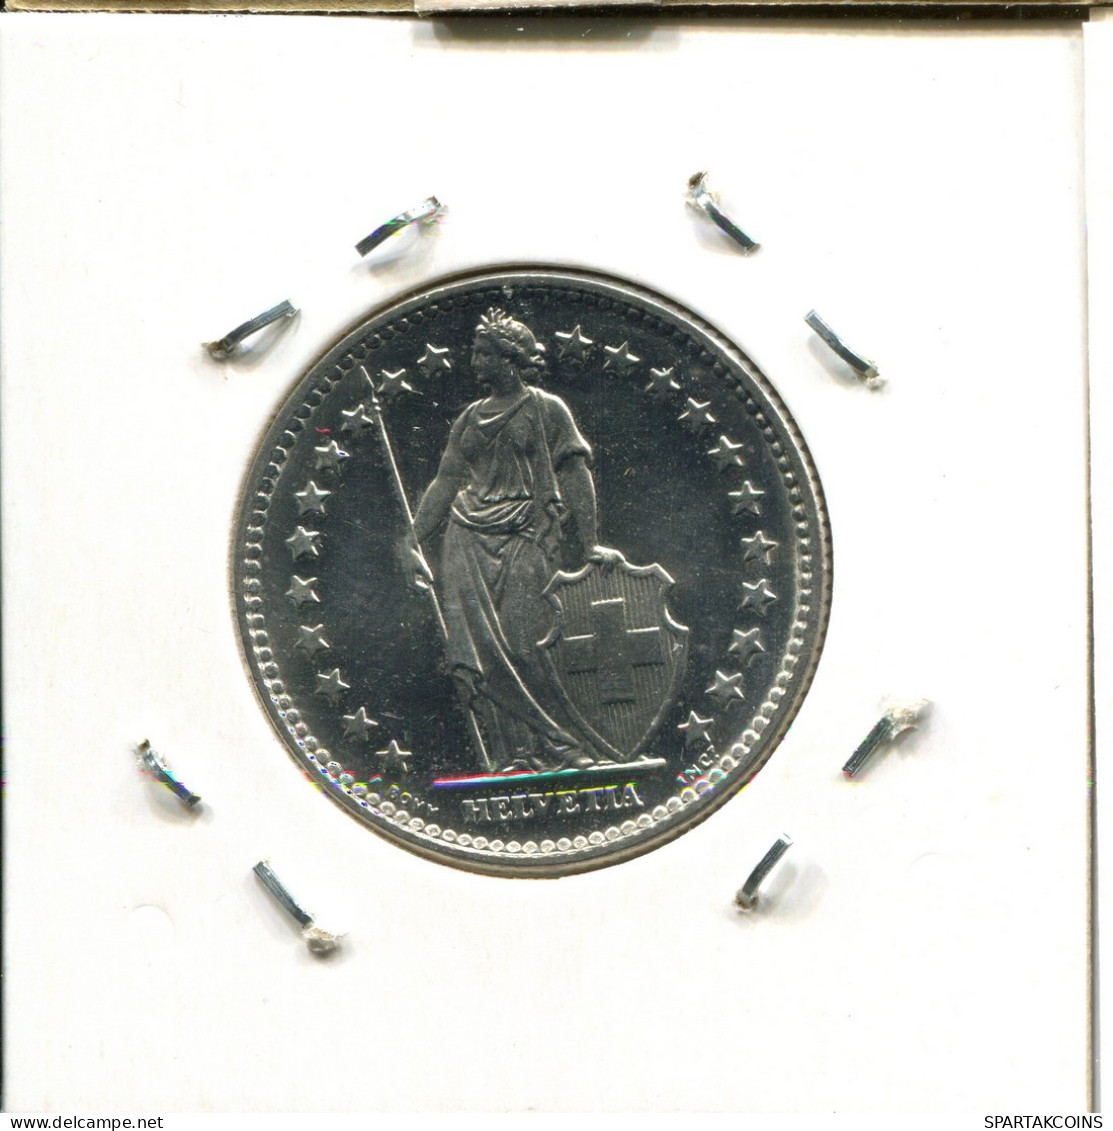 2 FRANCS 1978 SWITZERLAND Coin #AY076.3.U.A - Autres & Non Classés